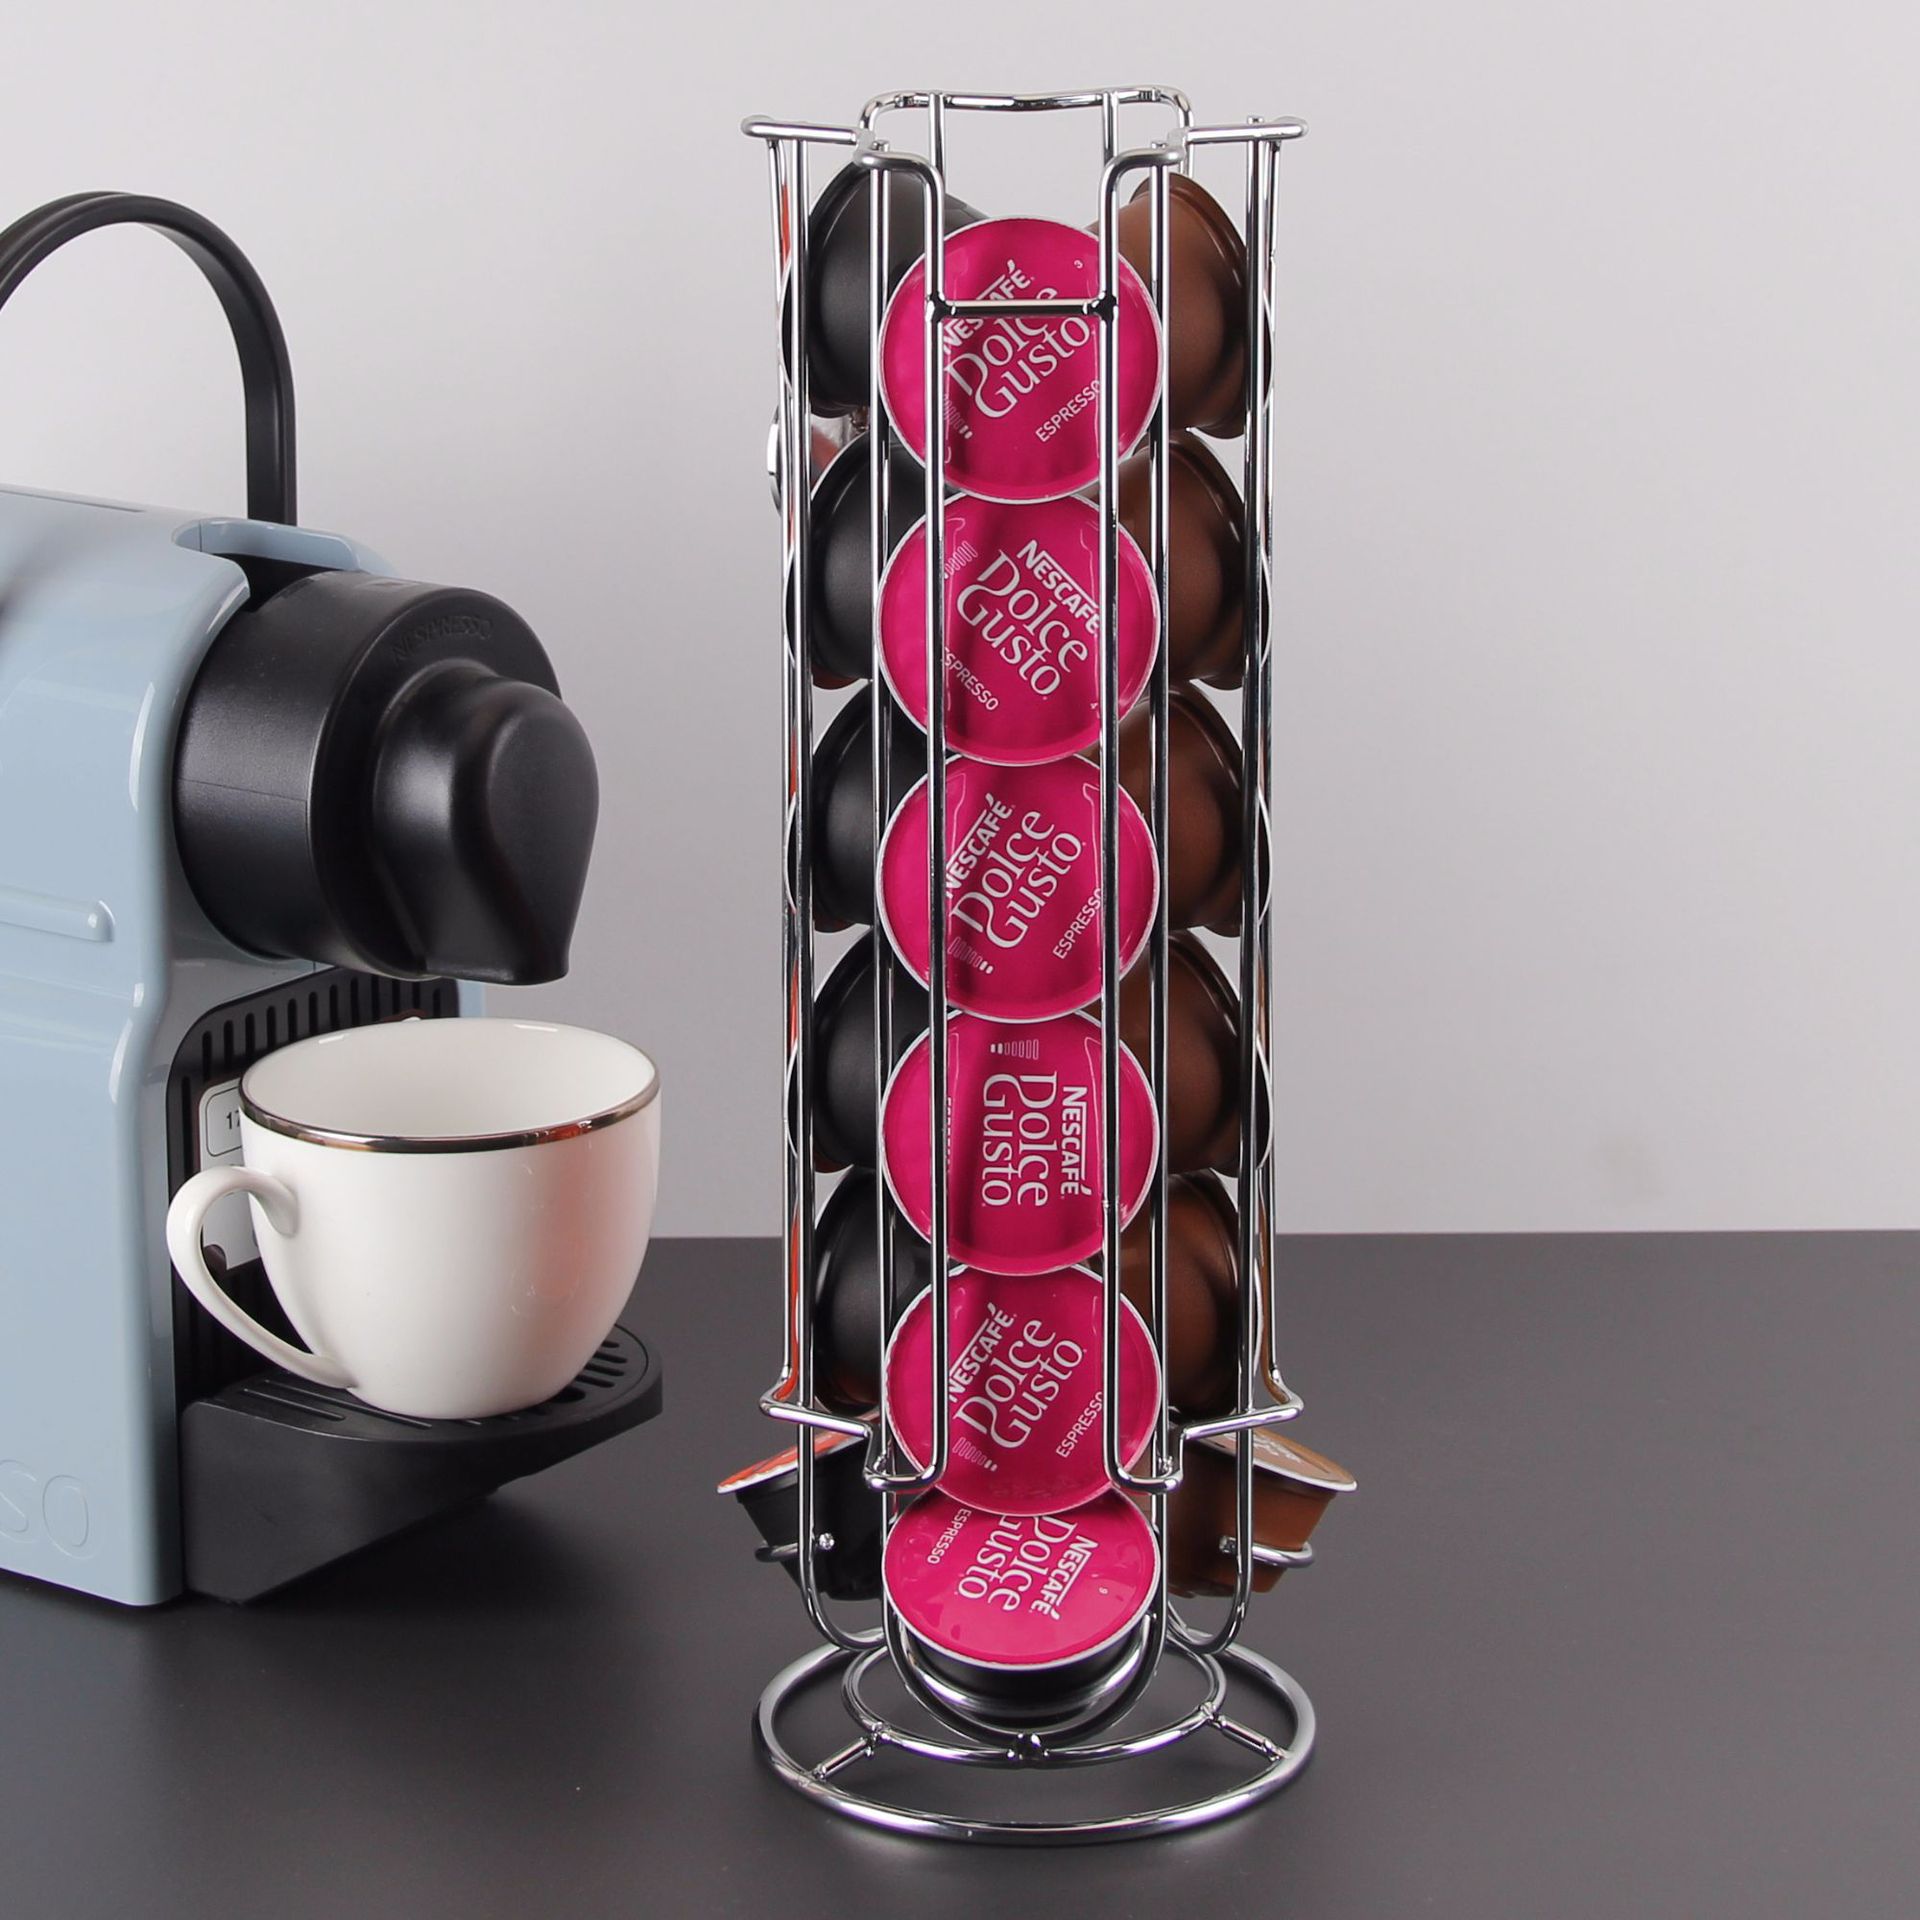 楓林宜居 愛拾家 Dolce Gusto金屬咖啡膠囊展示架 臺面電鍍膠囊咖啡收納架